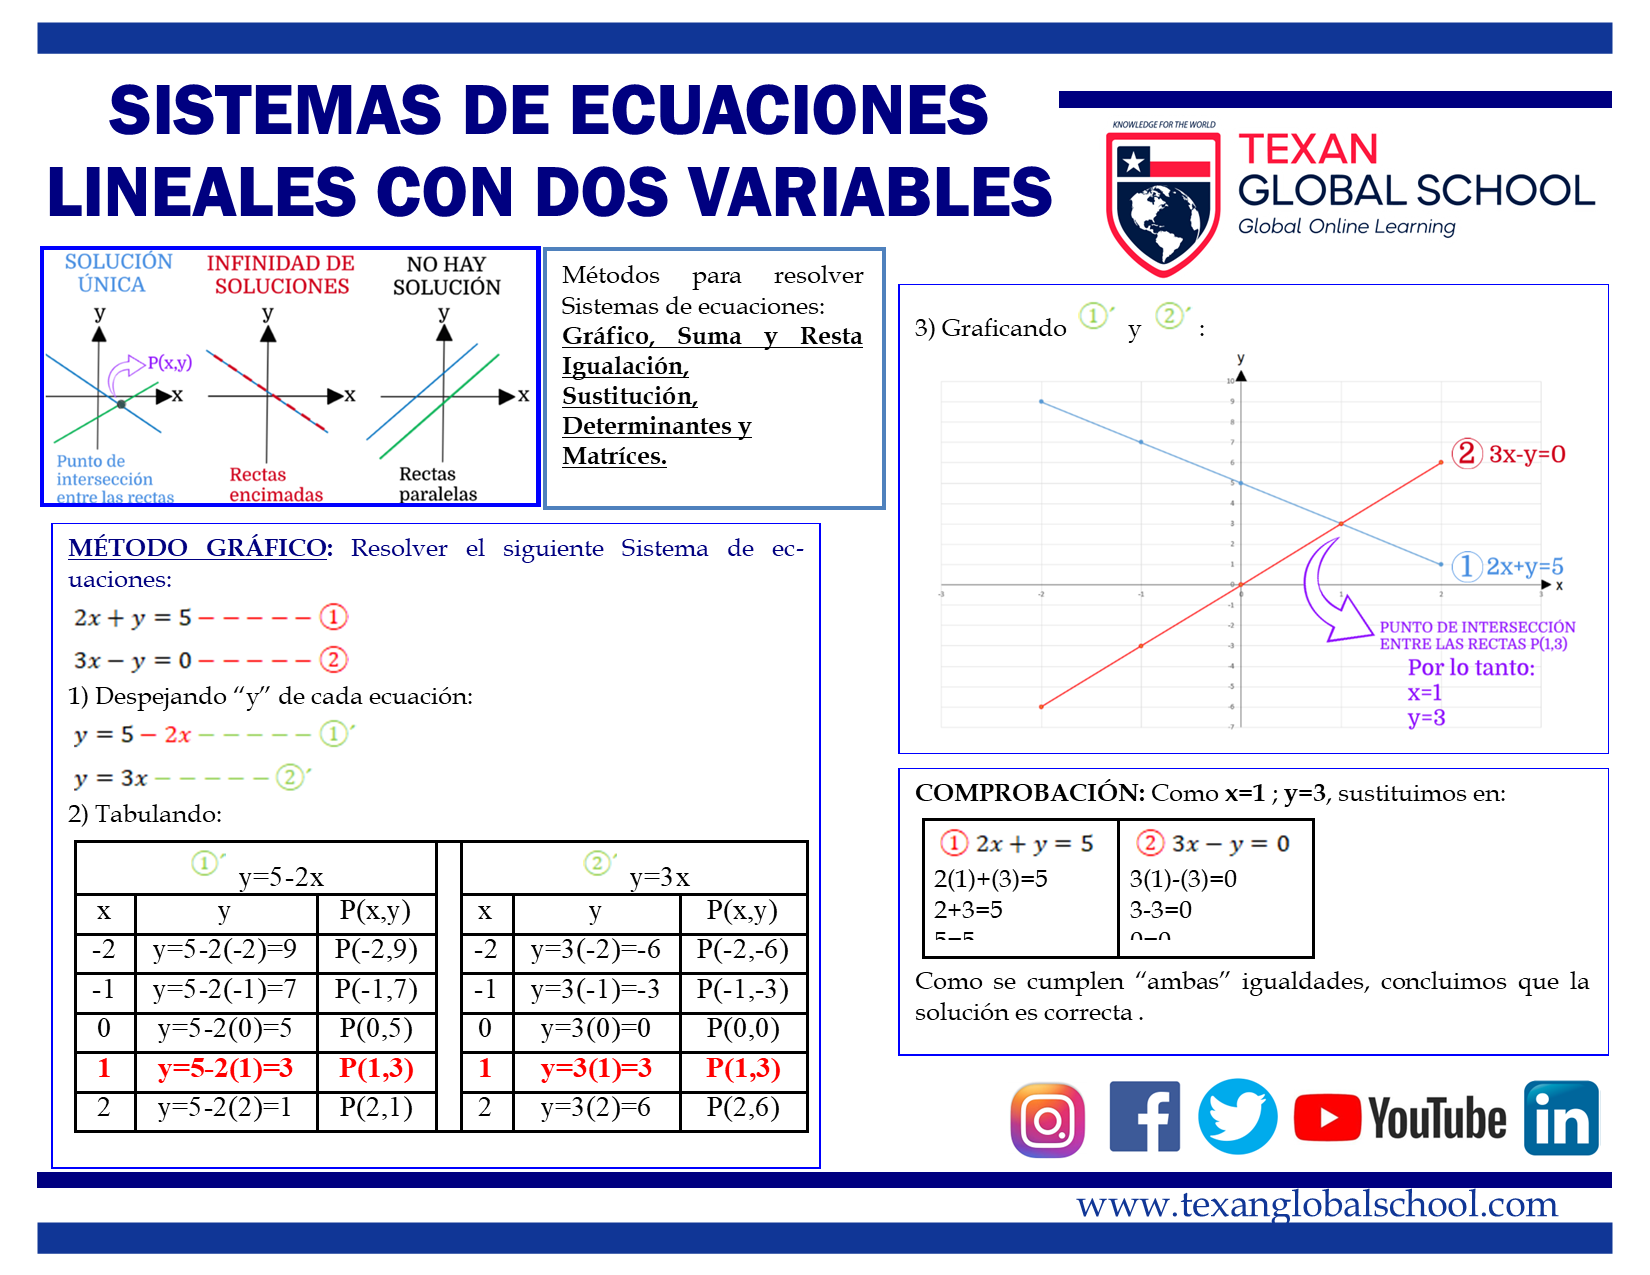 Sistemas de Ecuaciones Lineales con Dos Variables 1